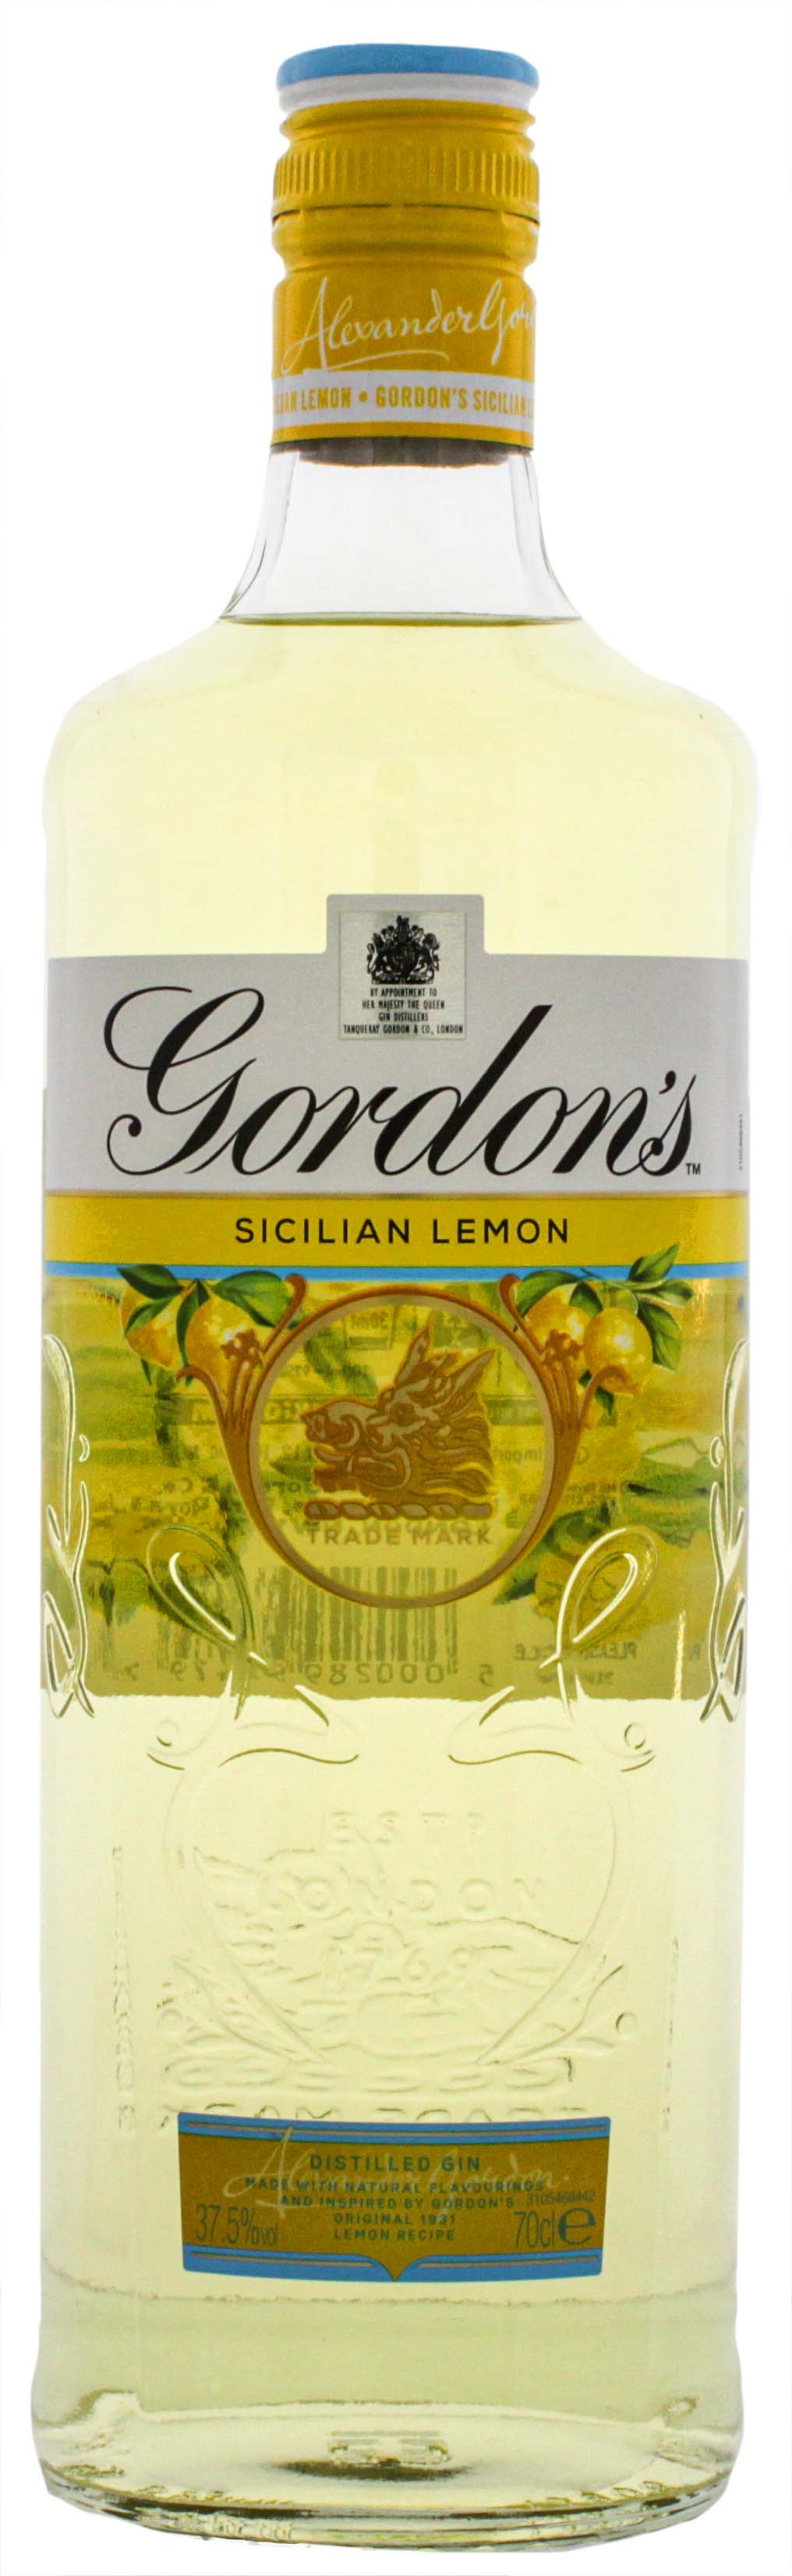 Gordons Sicilian Lemon Gin 0,7L jetzt kaufen im Drinkology Online Shop!